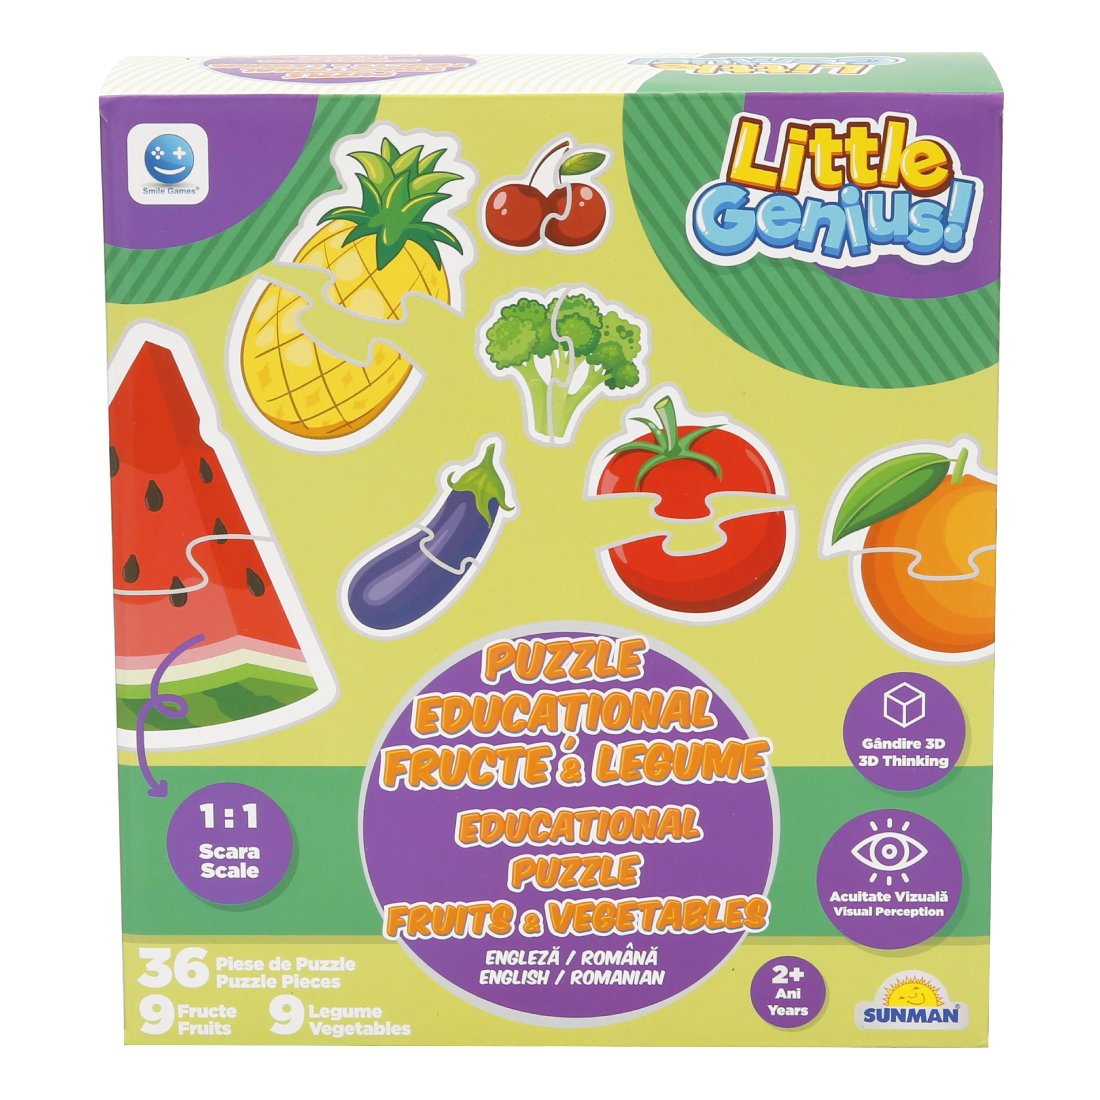 Poze Puzzle educational cu fructe si legume, Smile Games, 36 piese